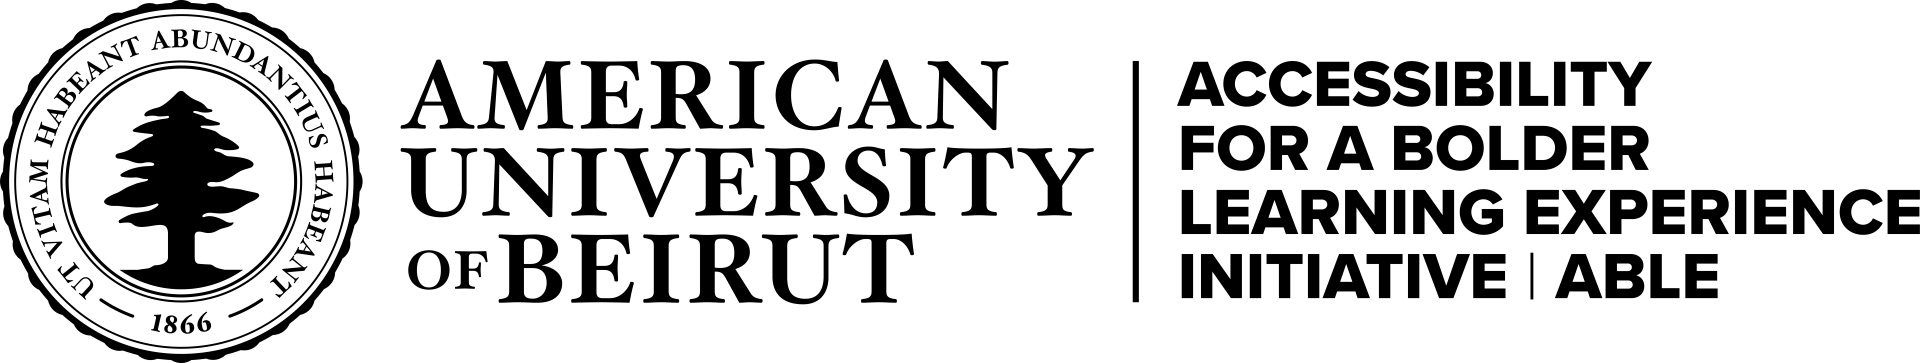 ABLE Logo